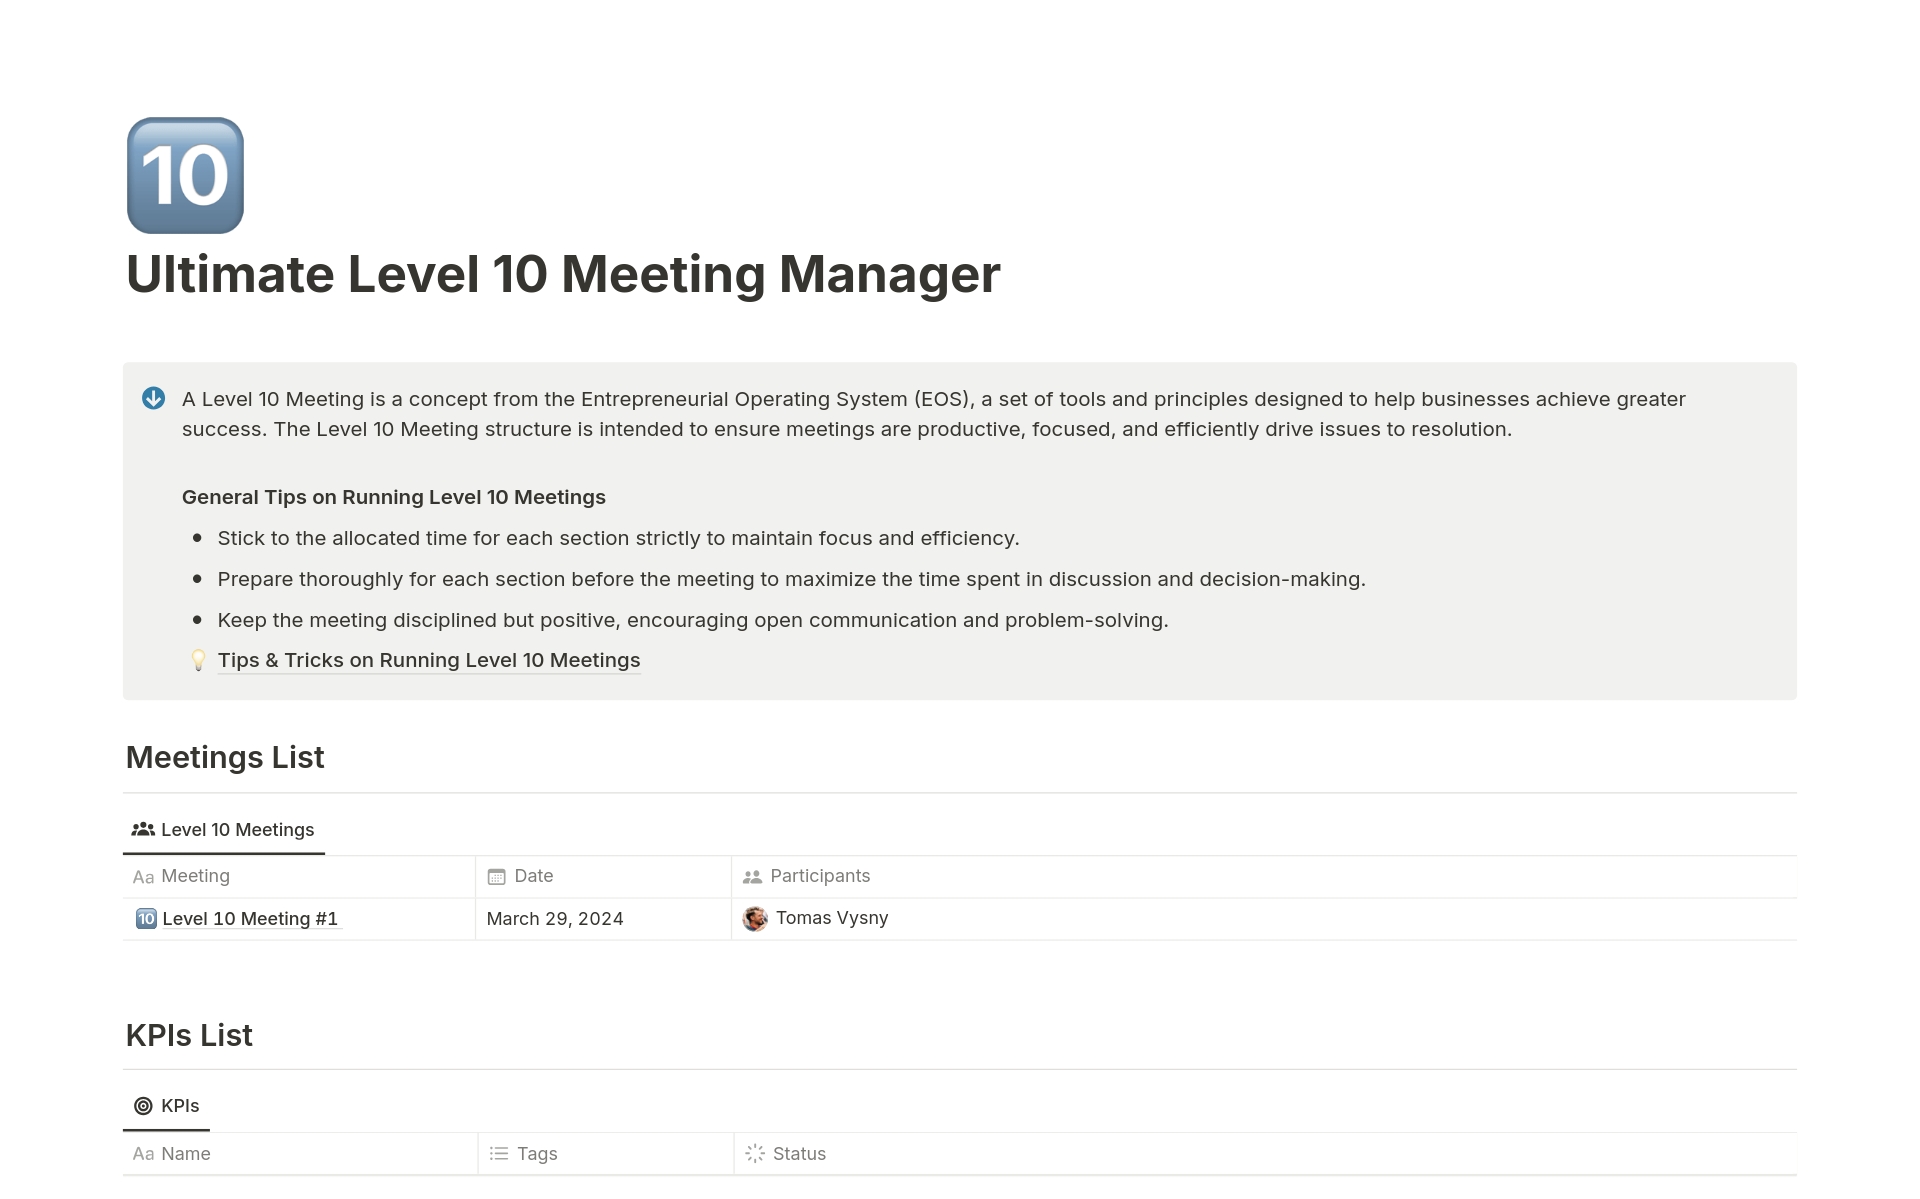 Uma prévia do modelo para Ultimate Level 10 Meeting Manager